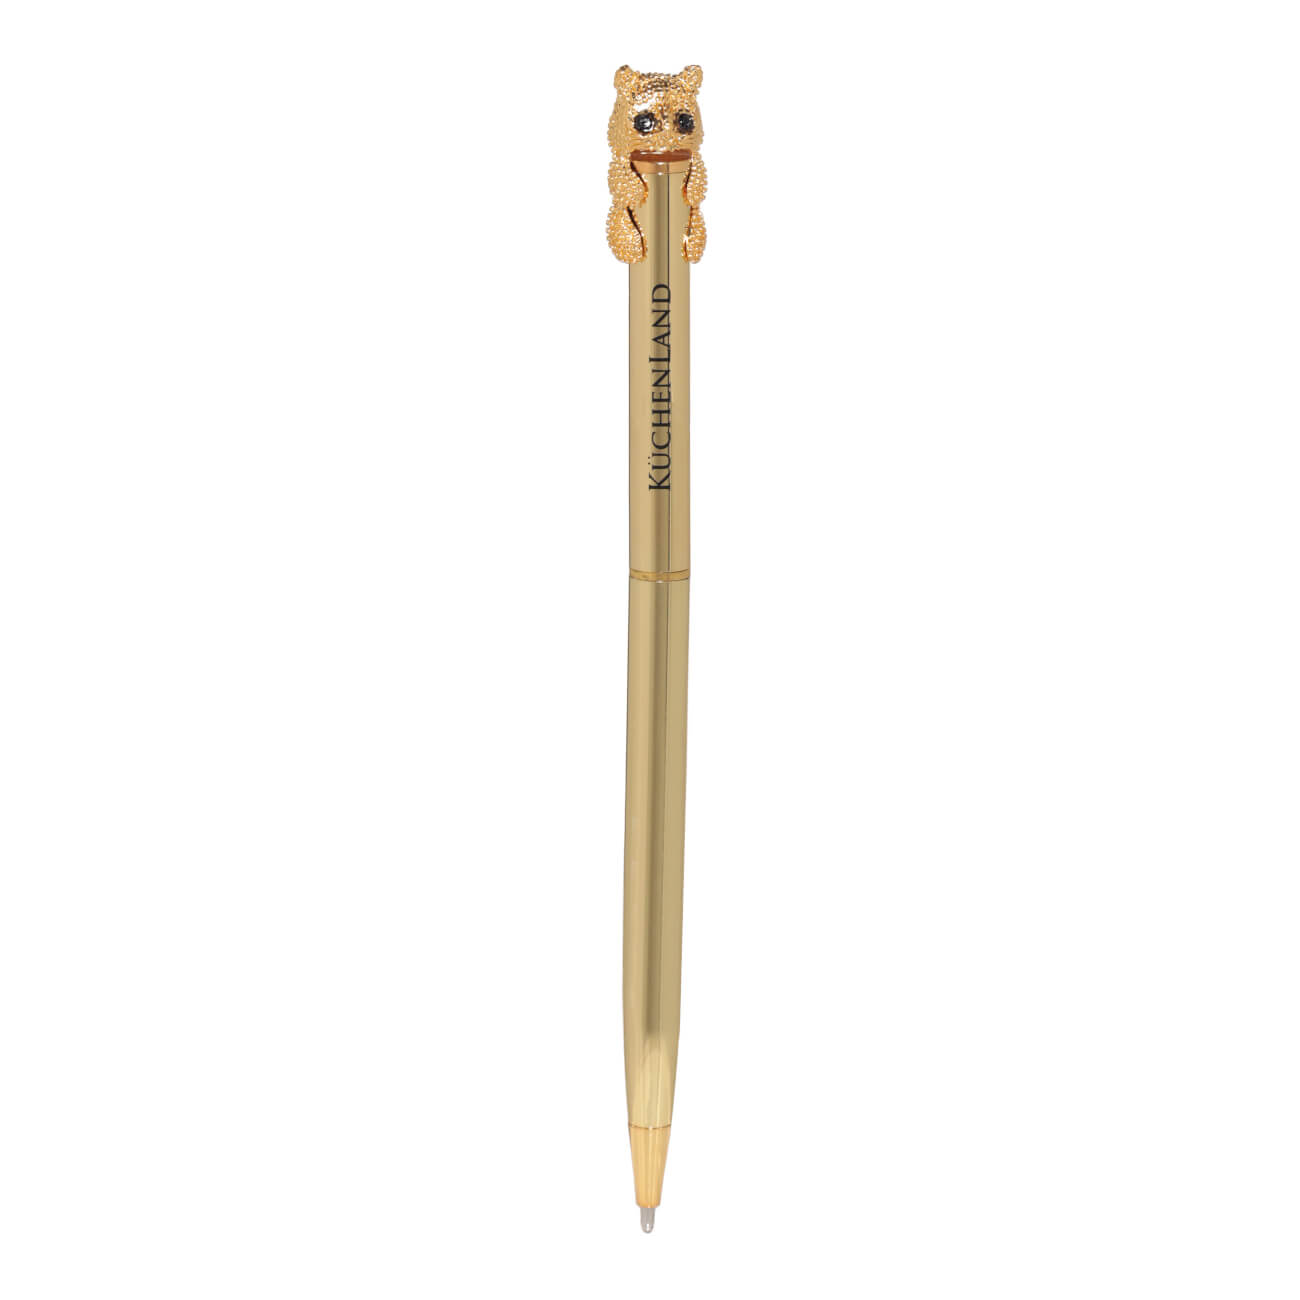 Ручка шариковая, 14 см, с фигуркой, золотистая, Кот, Draw figure автоматическая шариковая ручка hatber